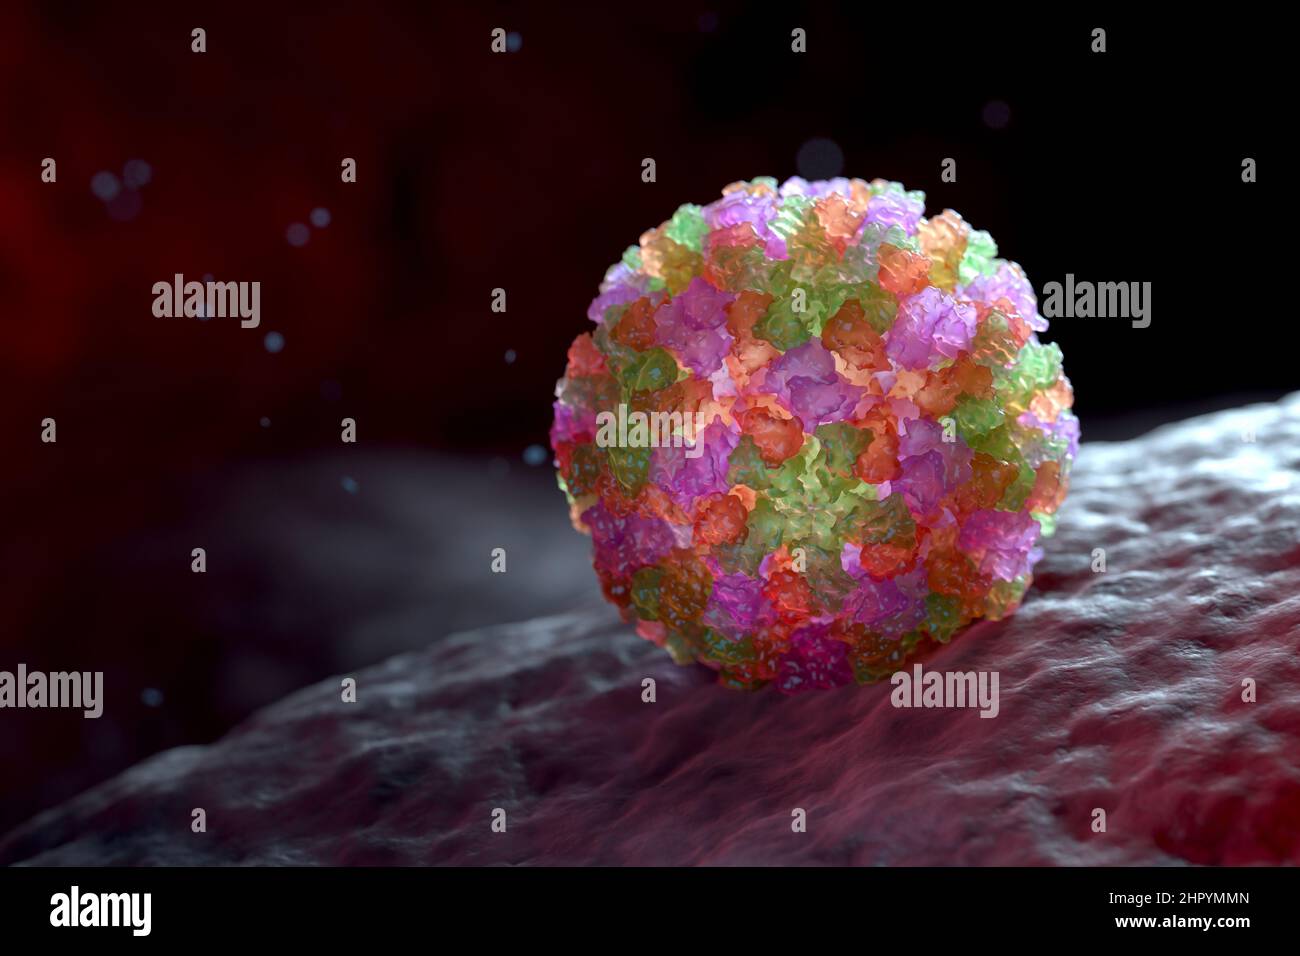 3D rappresentazione grafica di un singolo virione di Norovirus. I diversi colori rappresentano regioni diverse del guscio proteico esterno dell'organismo, o c Foto Stock